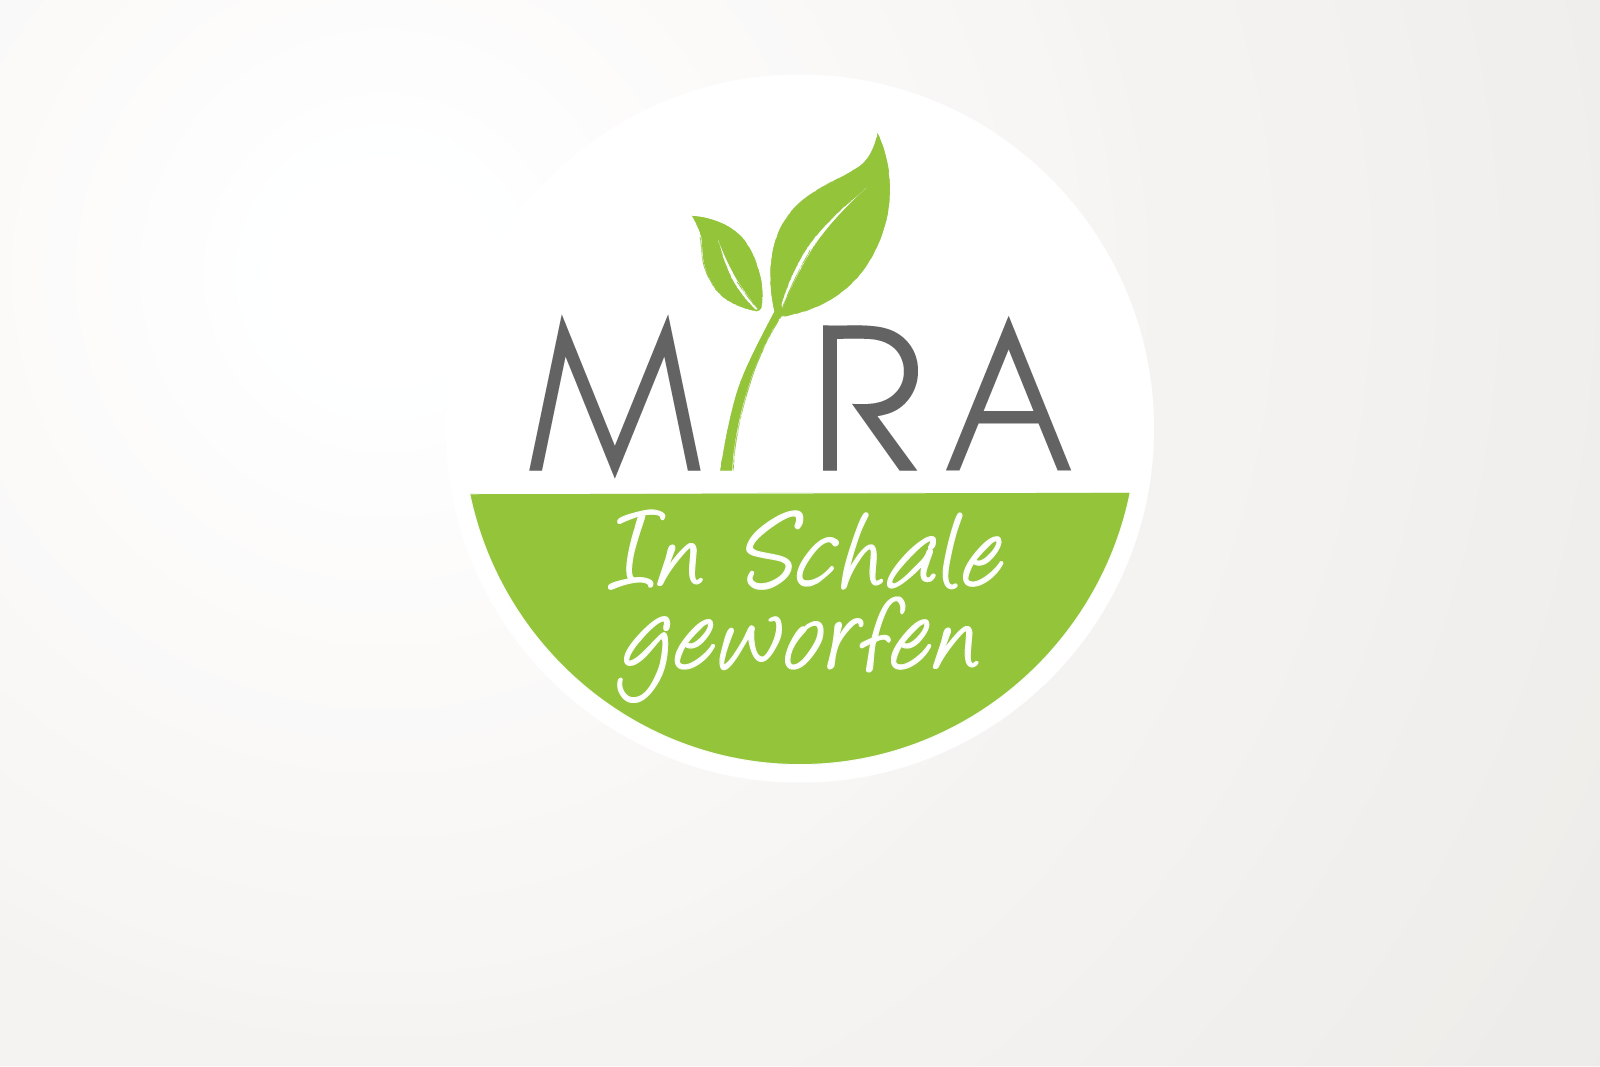 MIRA Salat- und Suppenbar GmbH